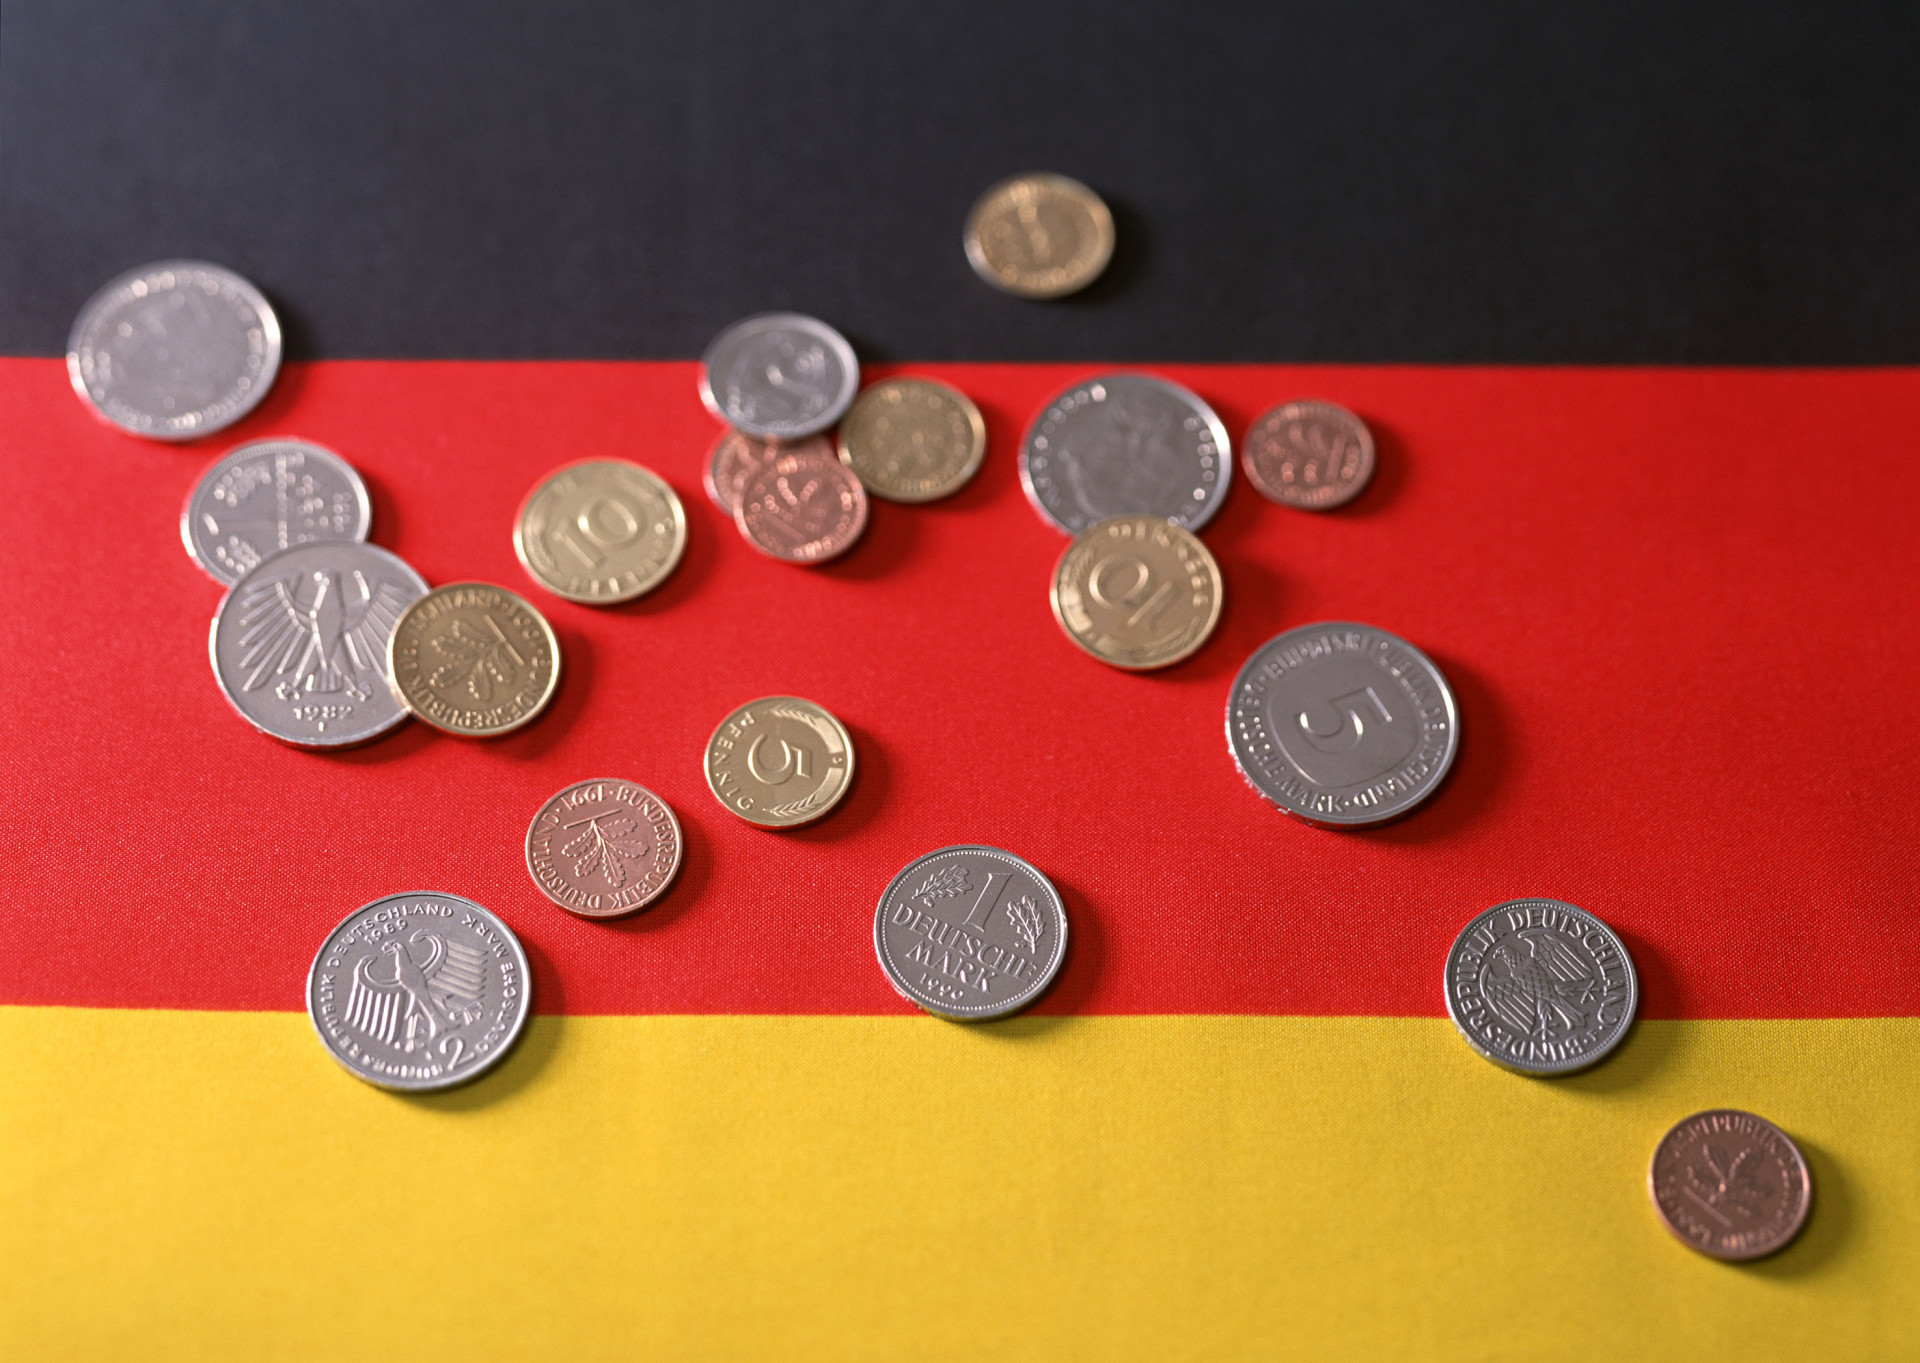 Германия хочет помочь Турции деньгами